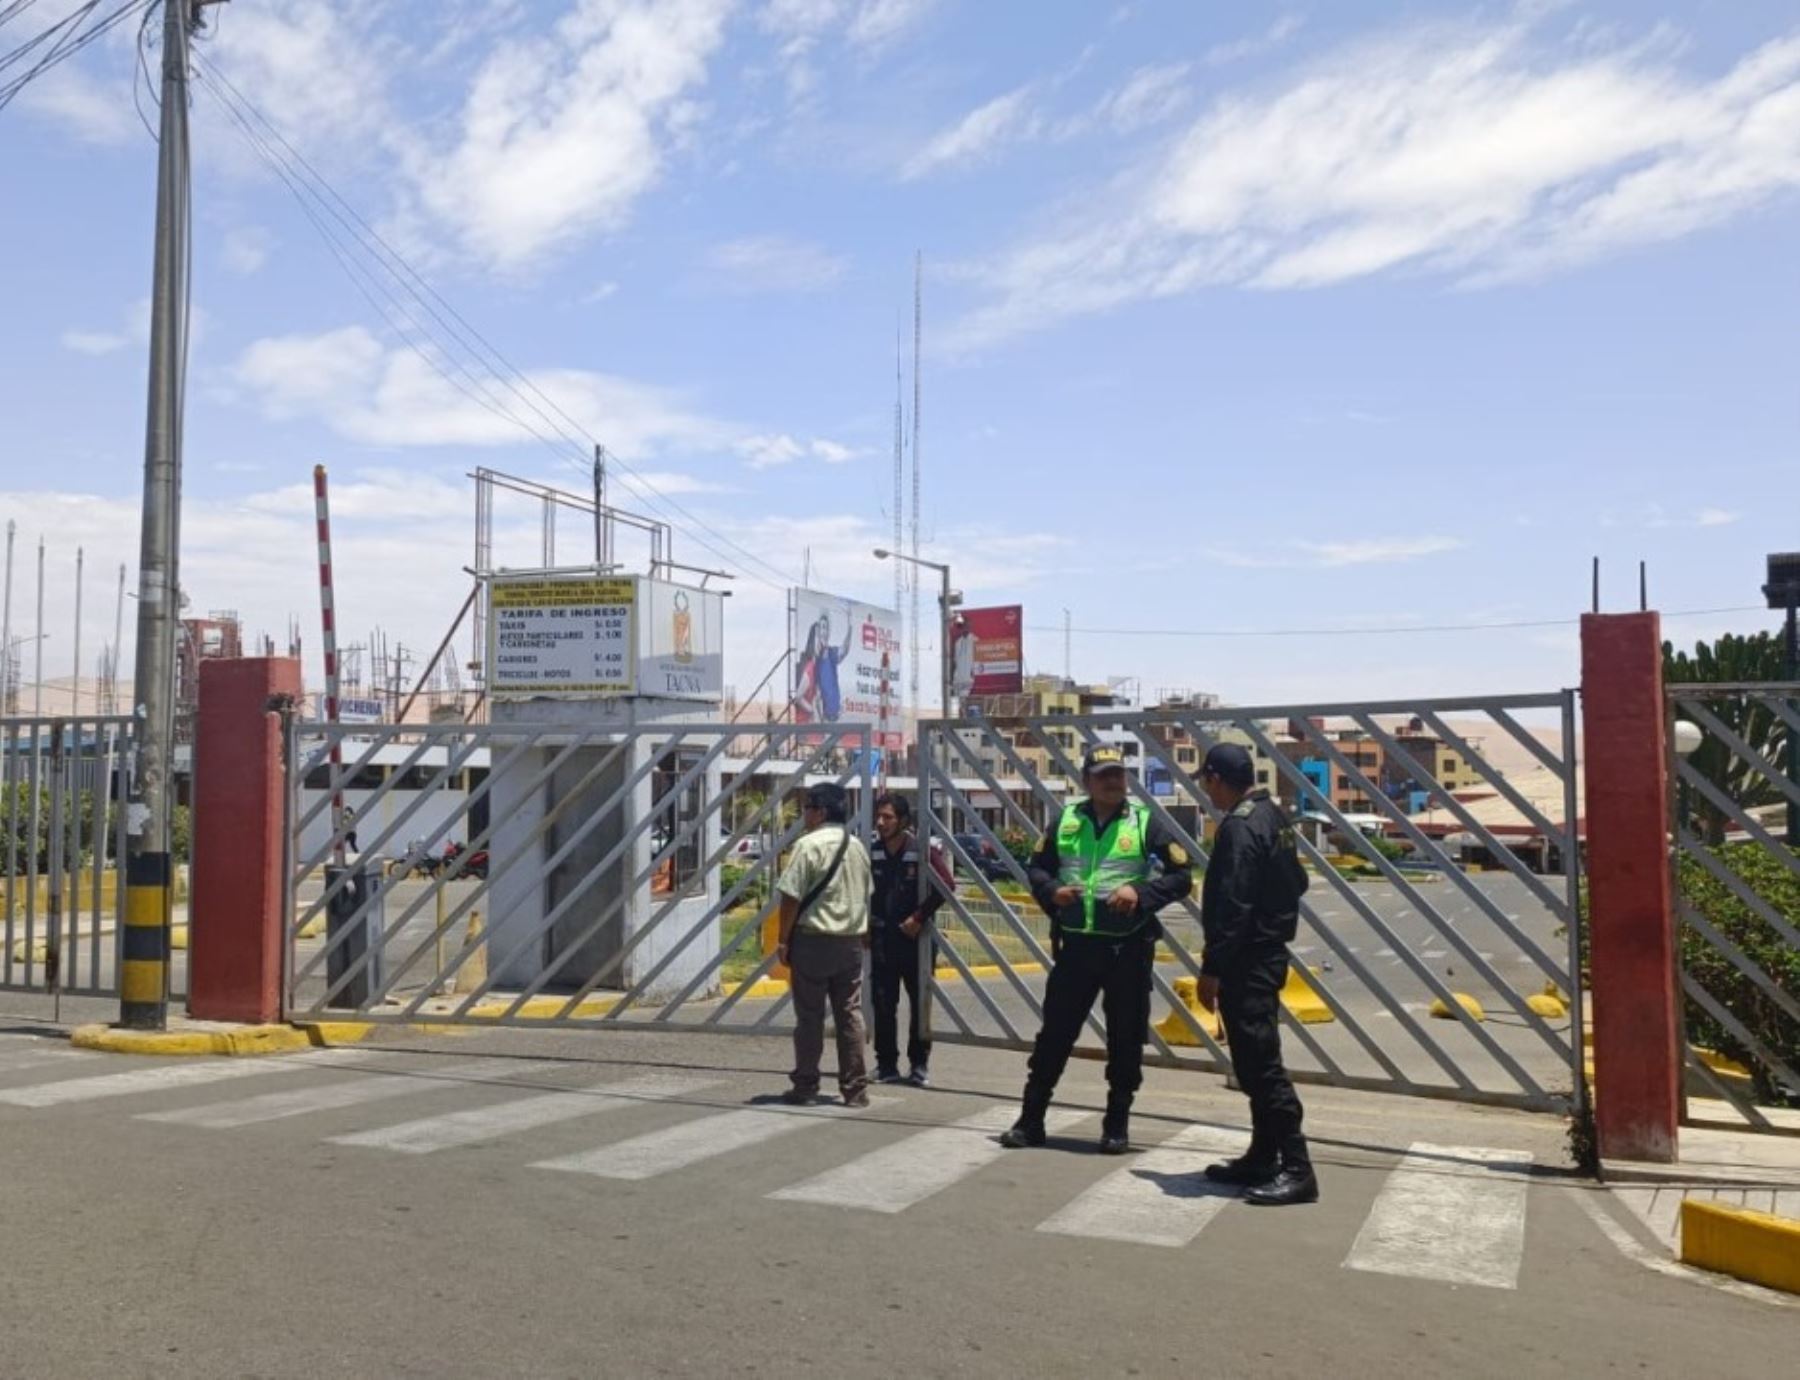 Terminal terrestre de Tacna cerró sus puertas debido a que los buses interprovinciales no pueden circular debido al bloqueo de carreteras que se registra en diversas regiones del país. Foto: Yudith Aguilar